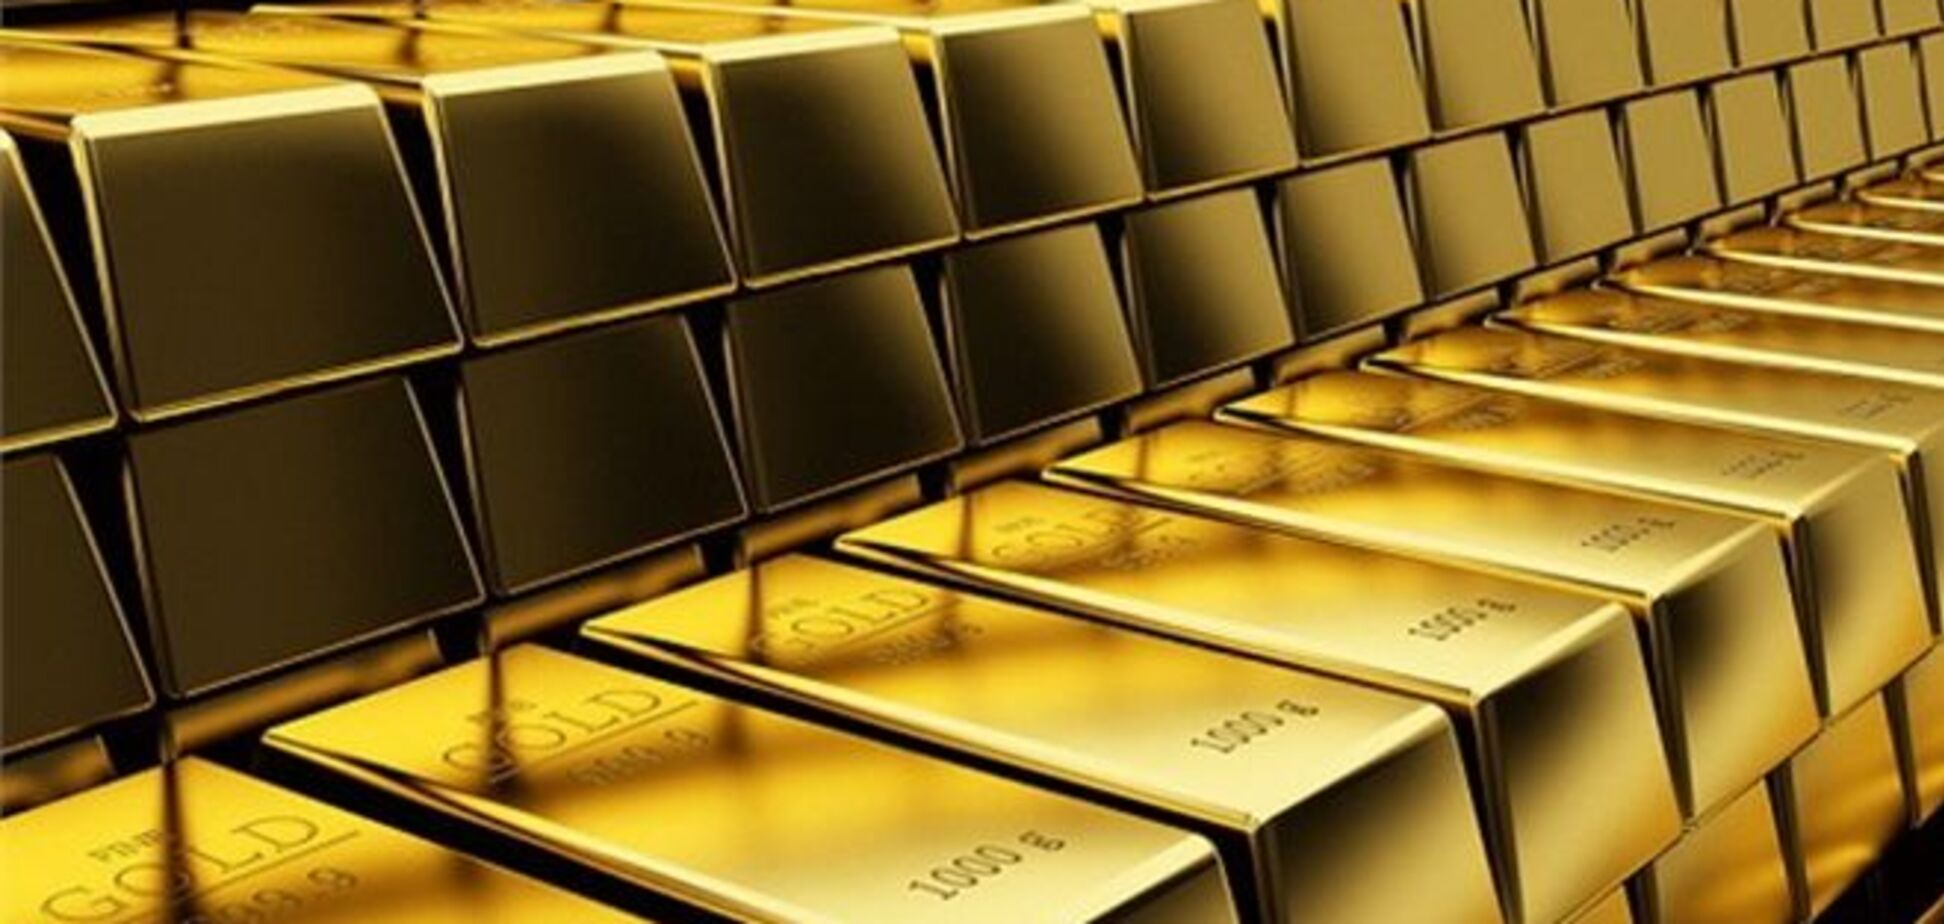 НБУ поднял золото в цене